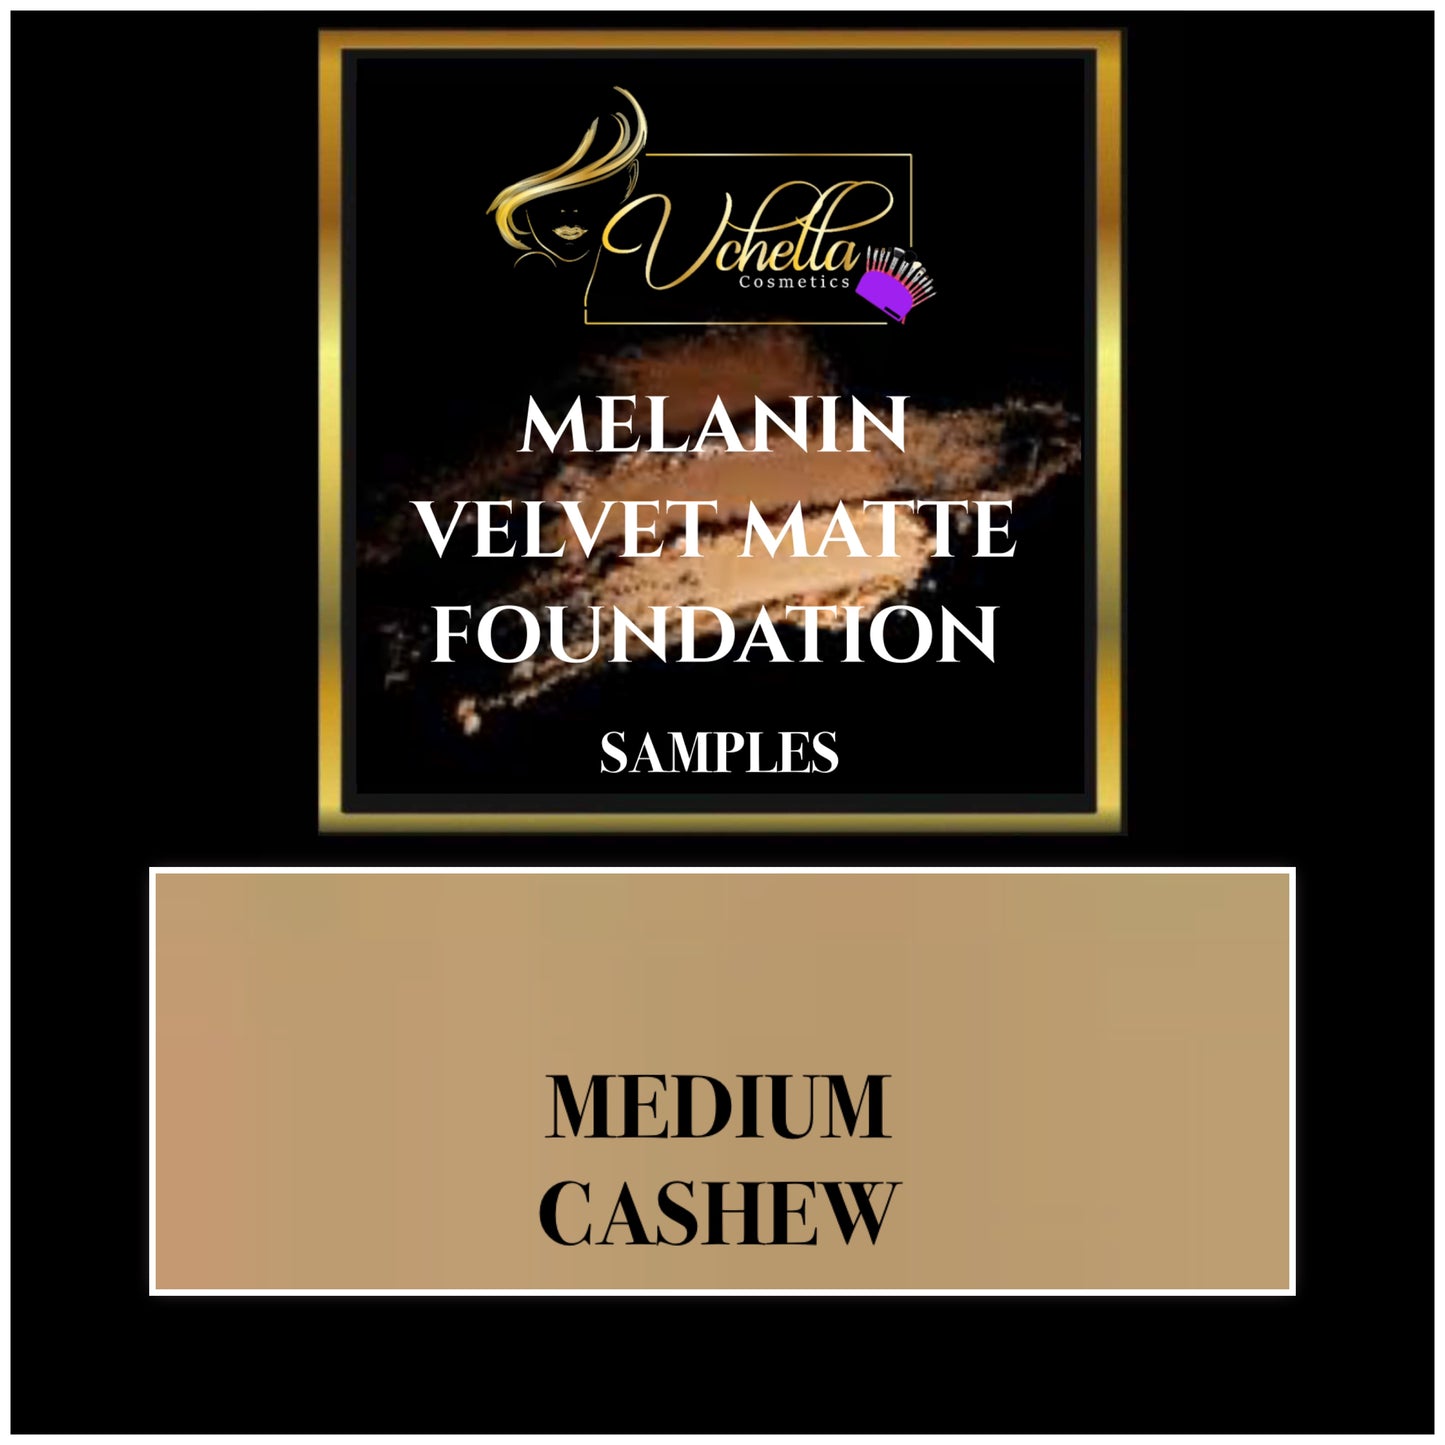 MELANIN VELVET MATTE FOUNDATION (SAMPLES)